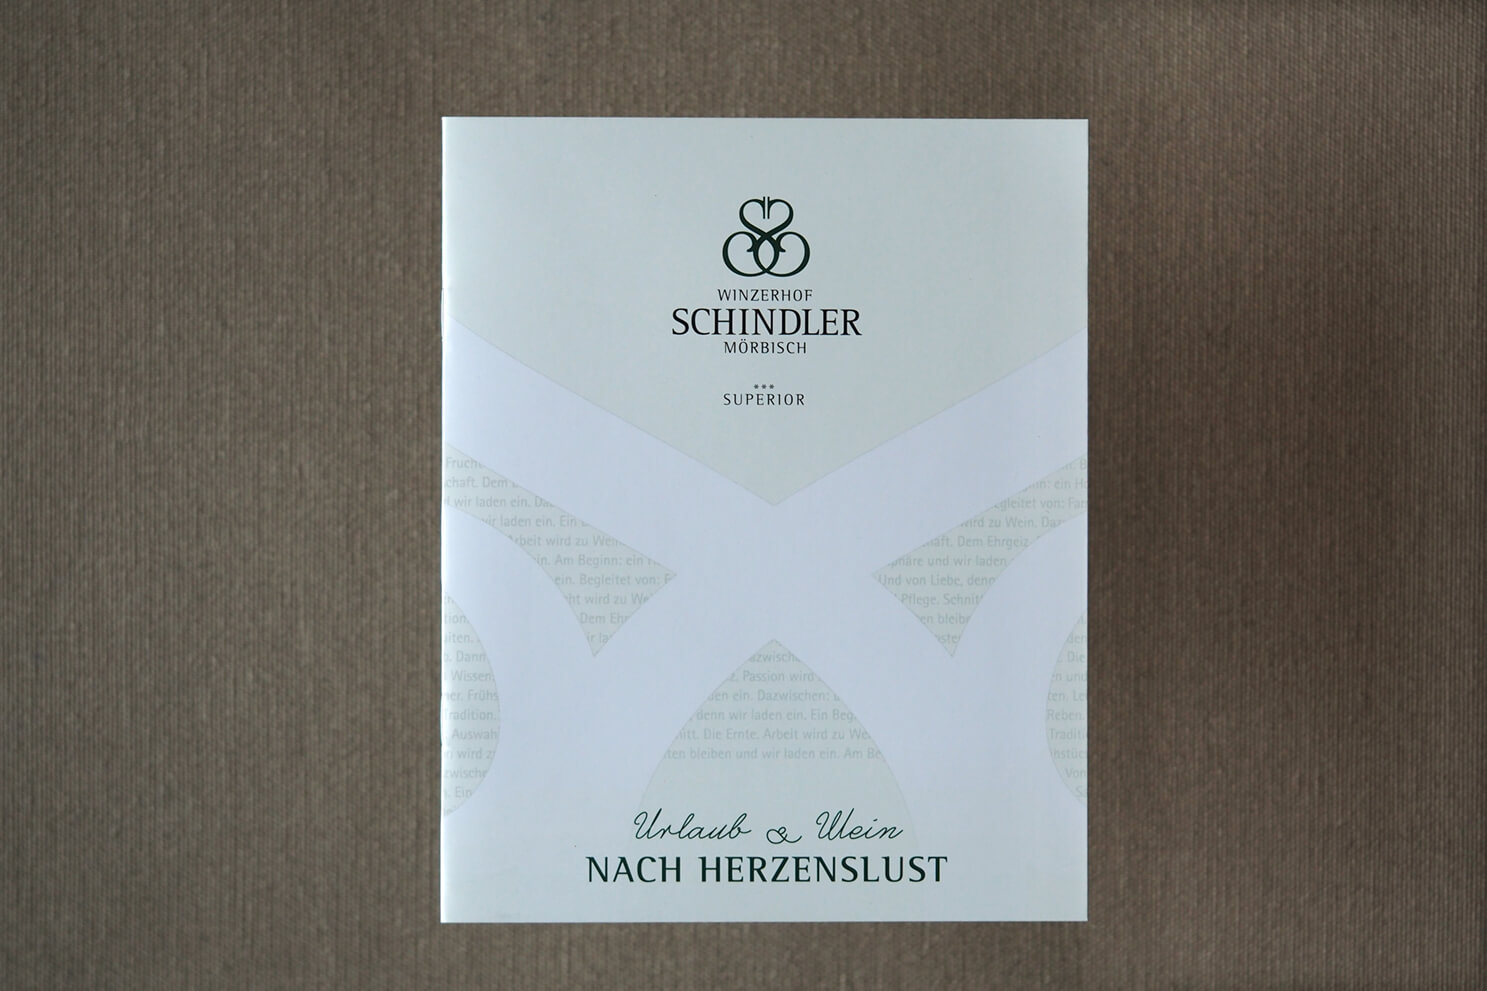 Winzerhof Schindler, Logo, Urlaub und Wein, Corporate Design, Grafisches Konzept, Etiketten, Weinetiketten Gestaltung, Mörbisch, Harald Schindler